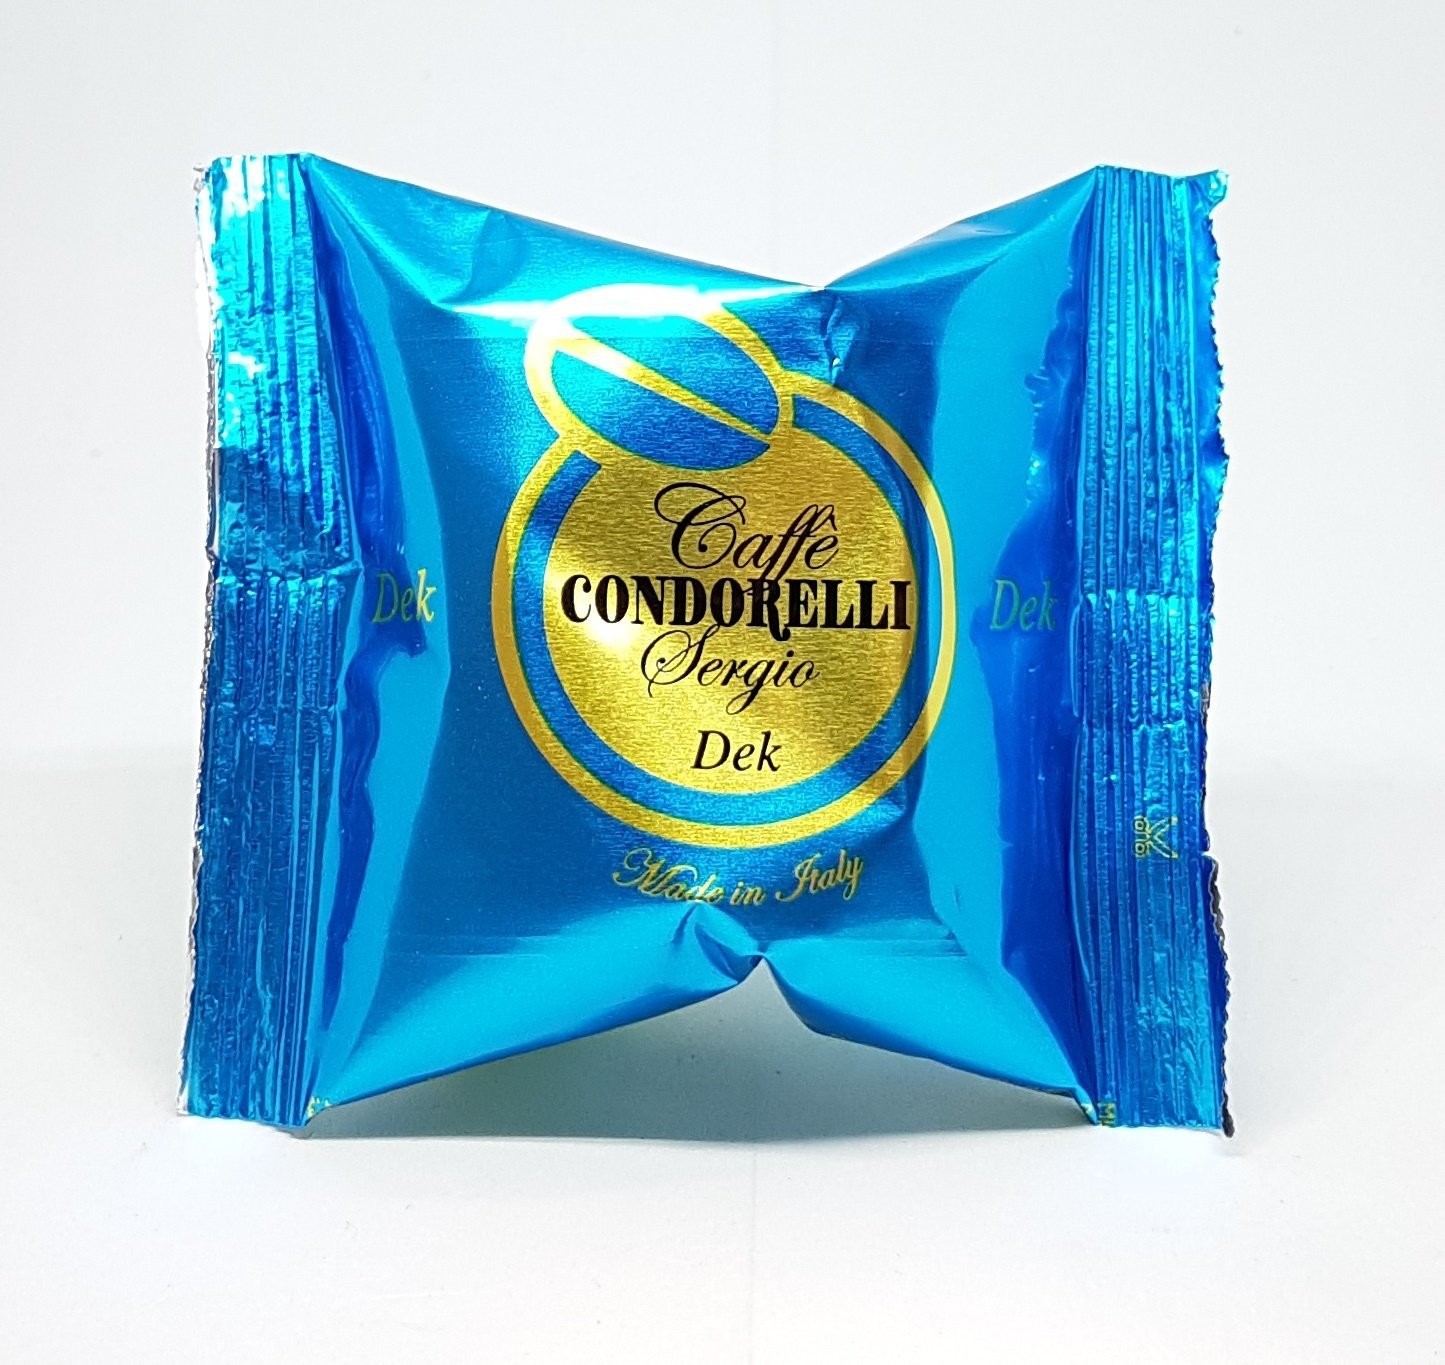 Decaffeinato Condorelli compatibili Uno System (50)